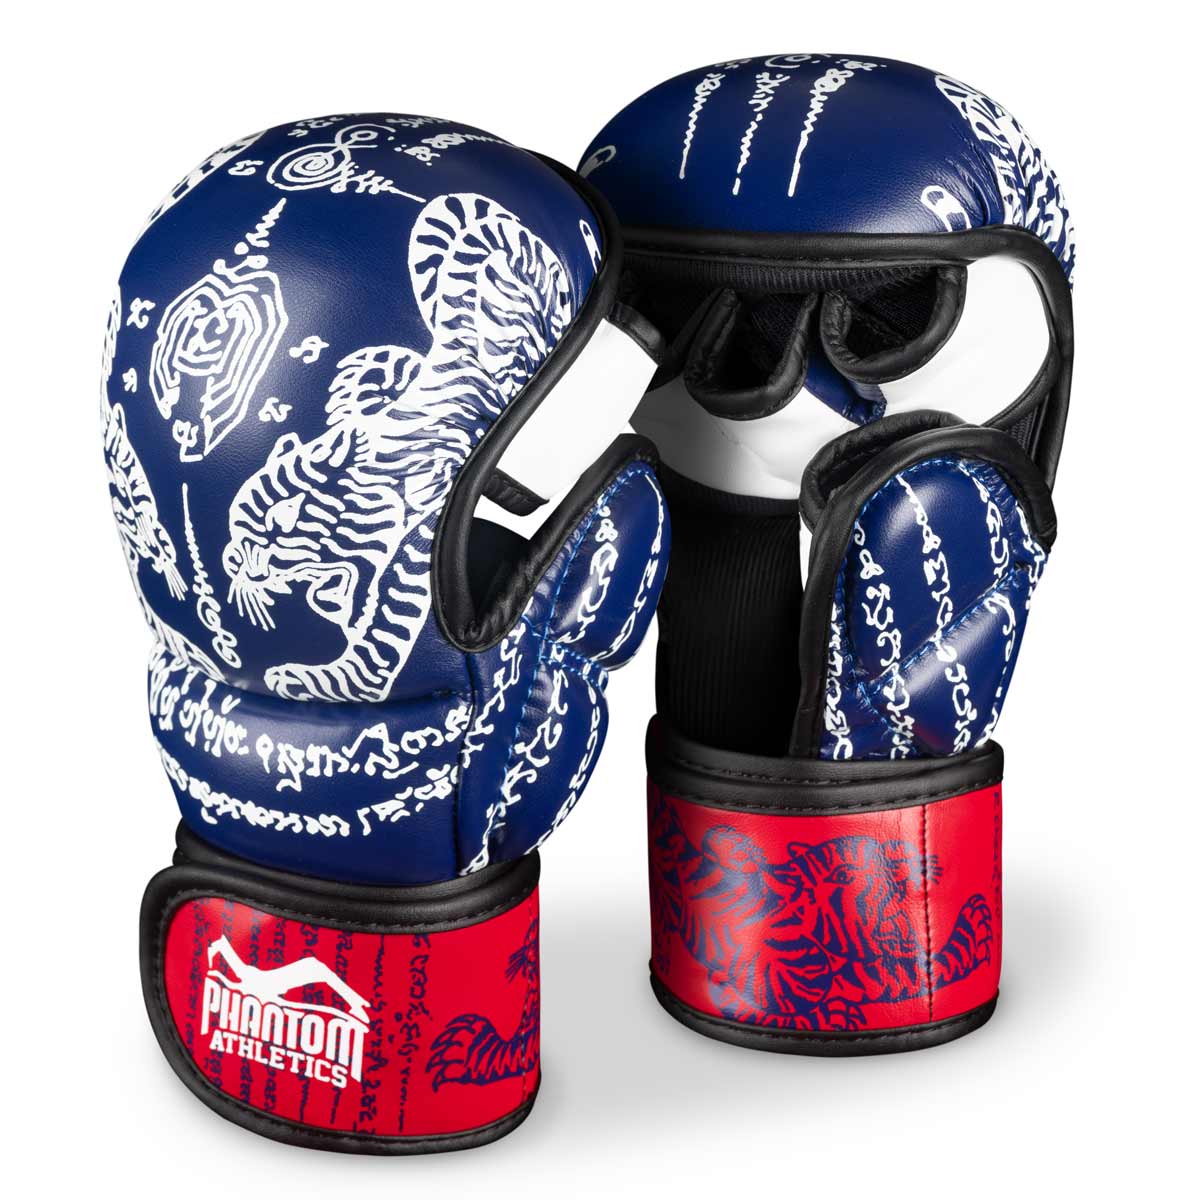 Ръкавици Phantom Muay Thai за спаринг, състезания и тренировки по тай бокс и MMA. В традиционния дизайн на Sak Yant и цвят синьо/червено.